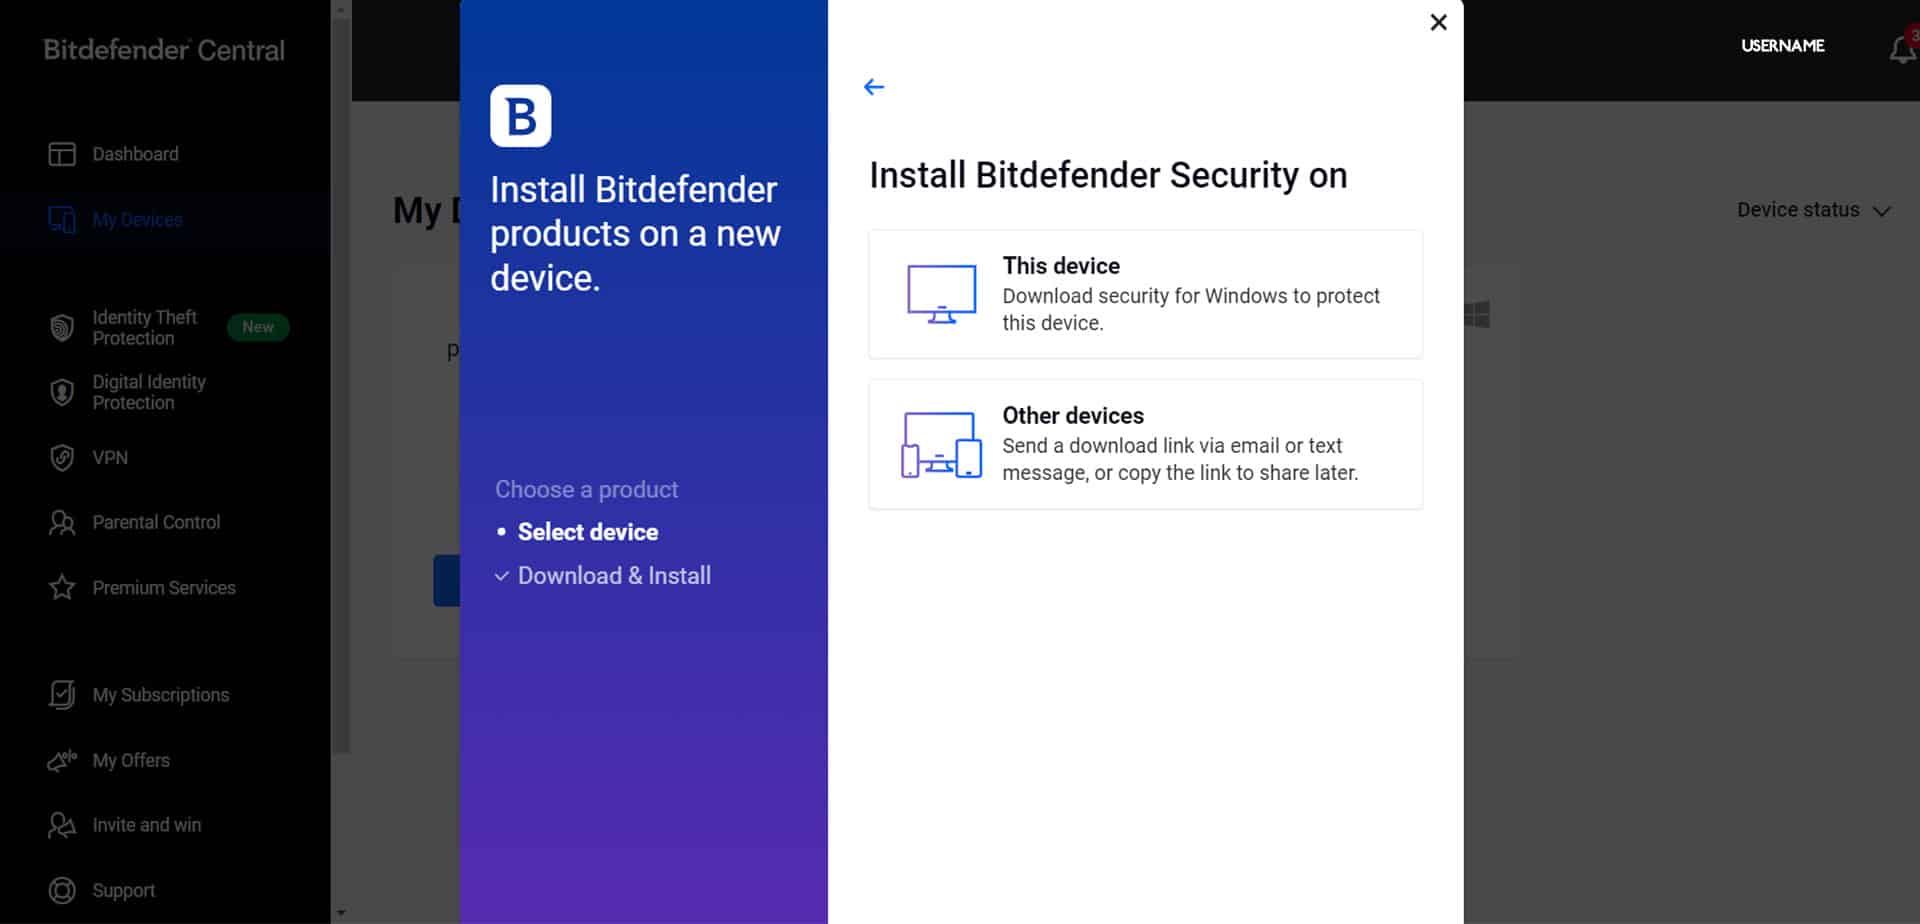 تعرض لوحة مستخدم Bitdefender جميع أجهزتك للتحكم والإدارة بسهولة.